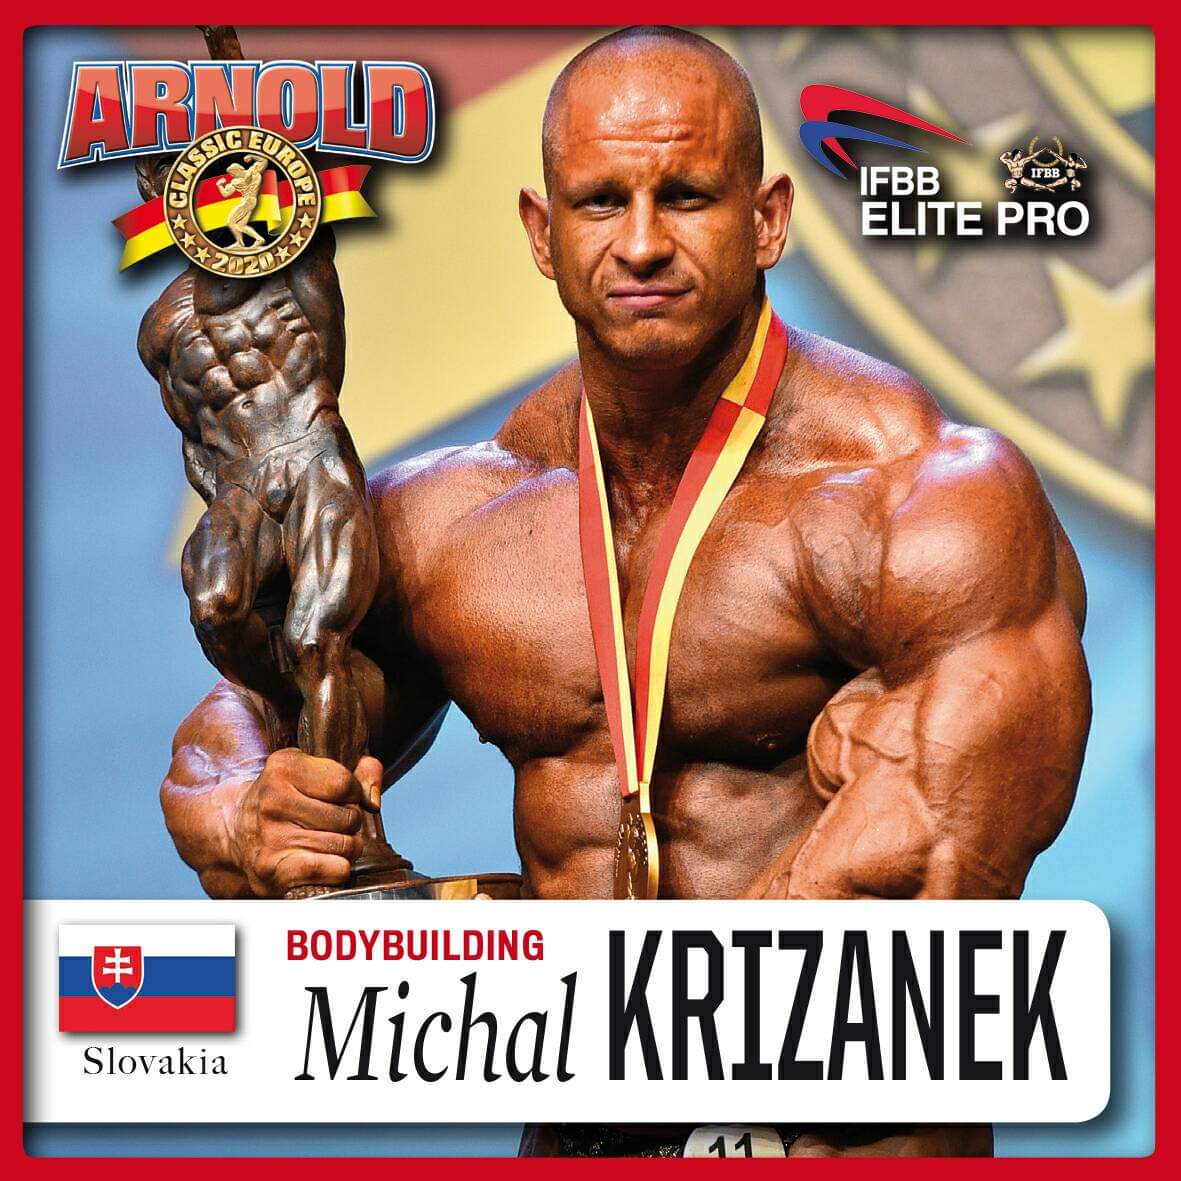 MICHAL KRIZANECK IFBB ELITE PRO parteciperà all'Arnold Classic Europe 2020 ifbb elite pro